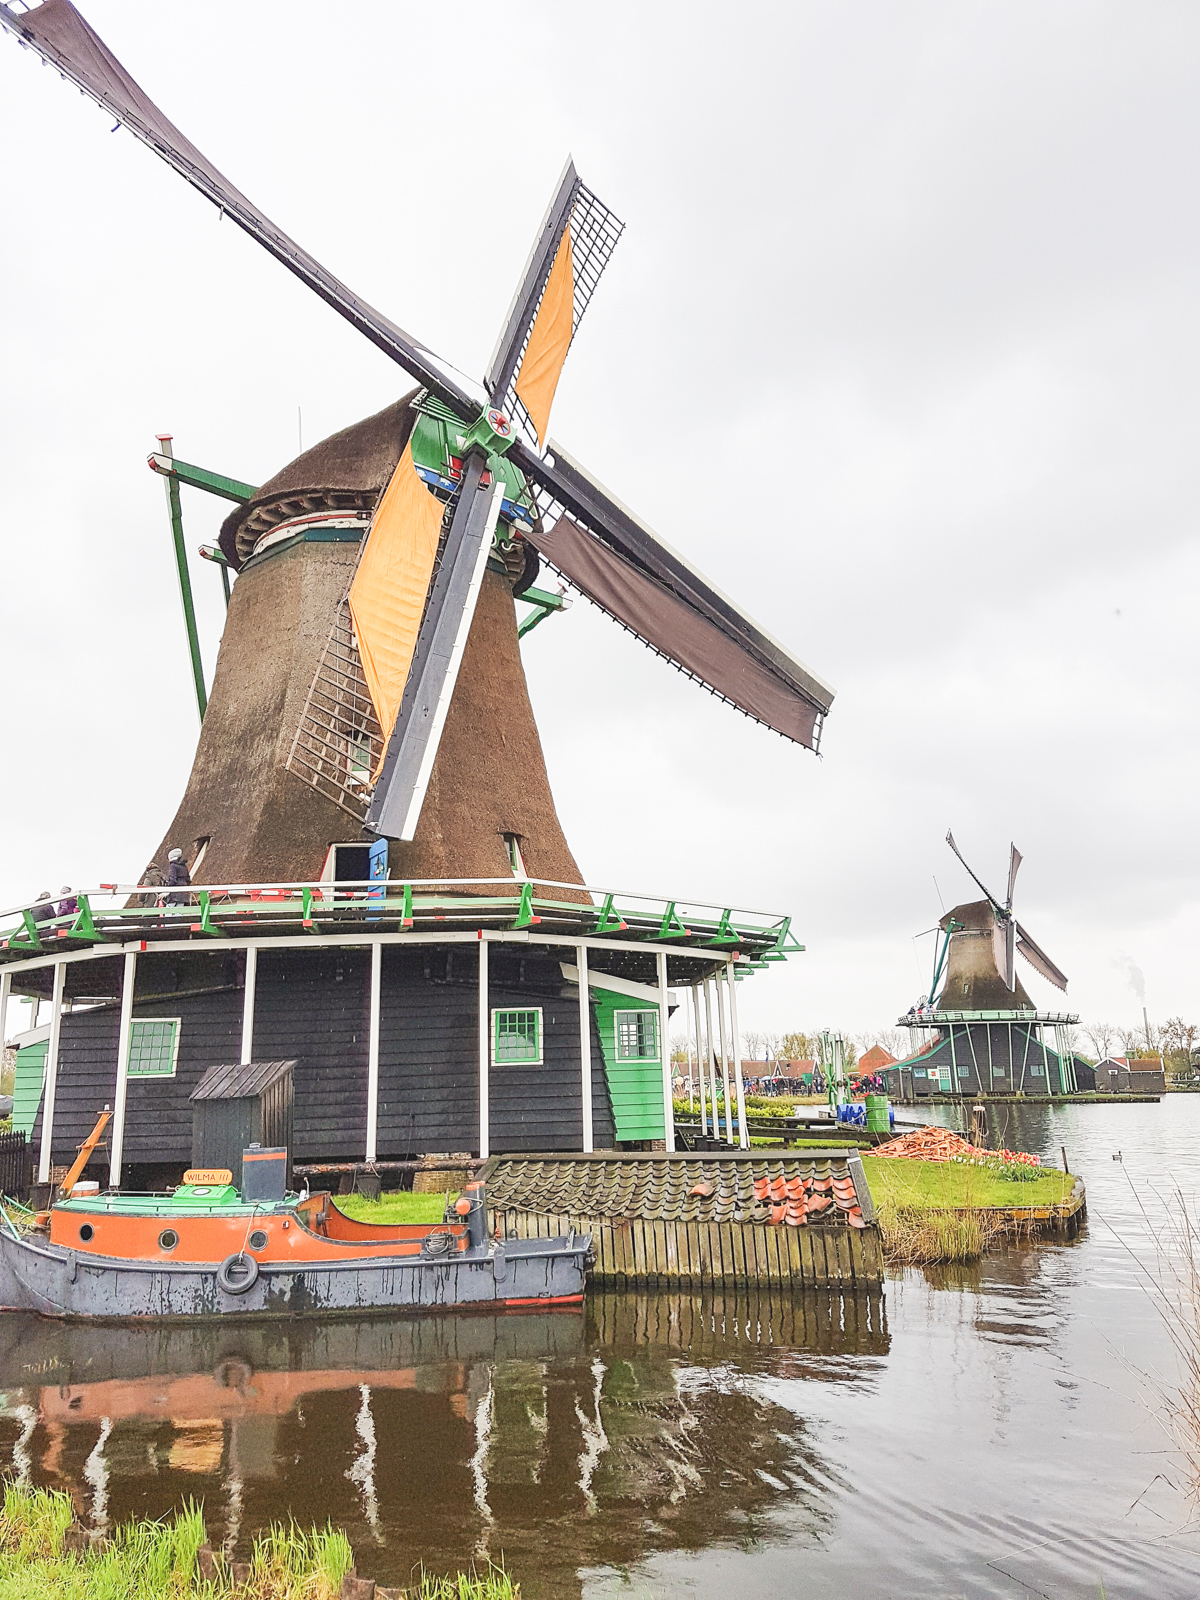 Windmills at Zaanse Schans, Holland, The Netherlands